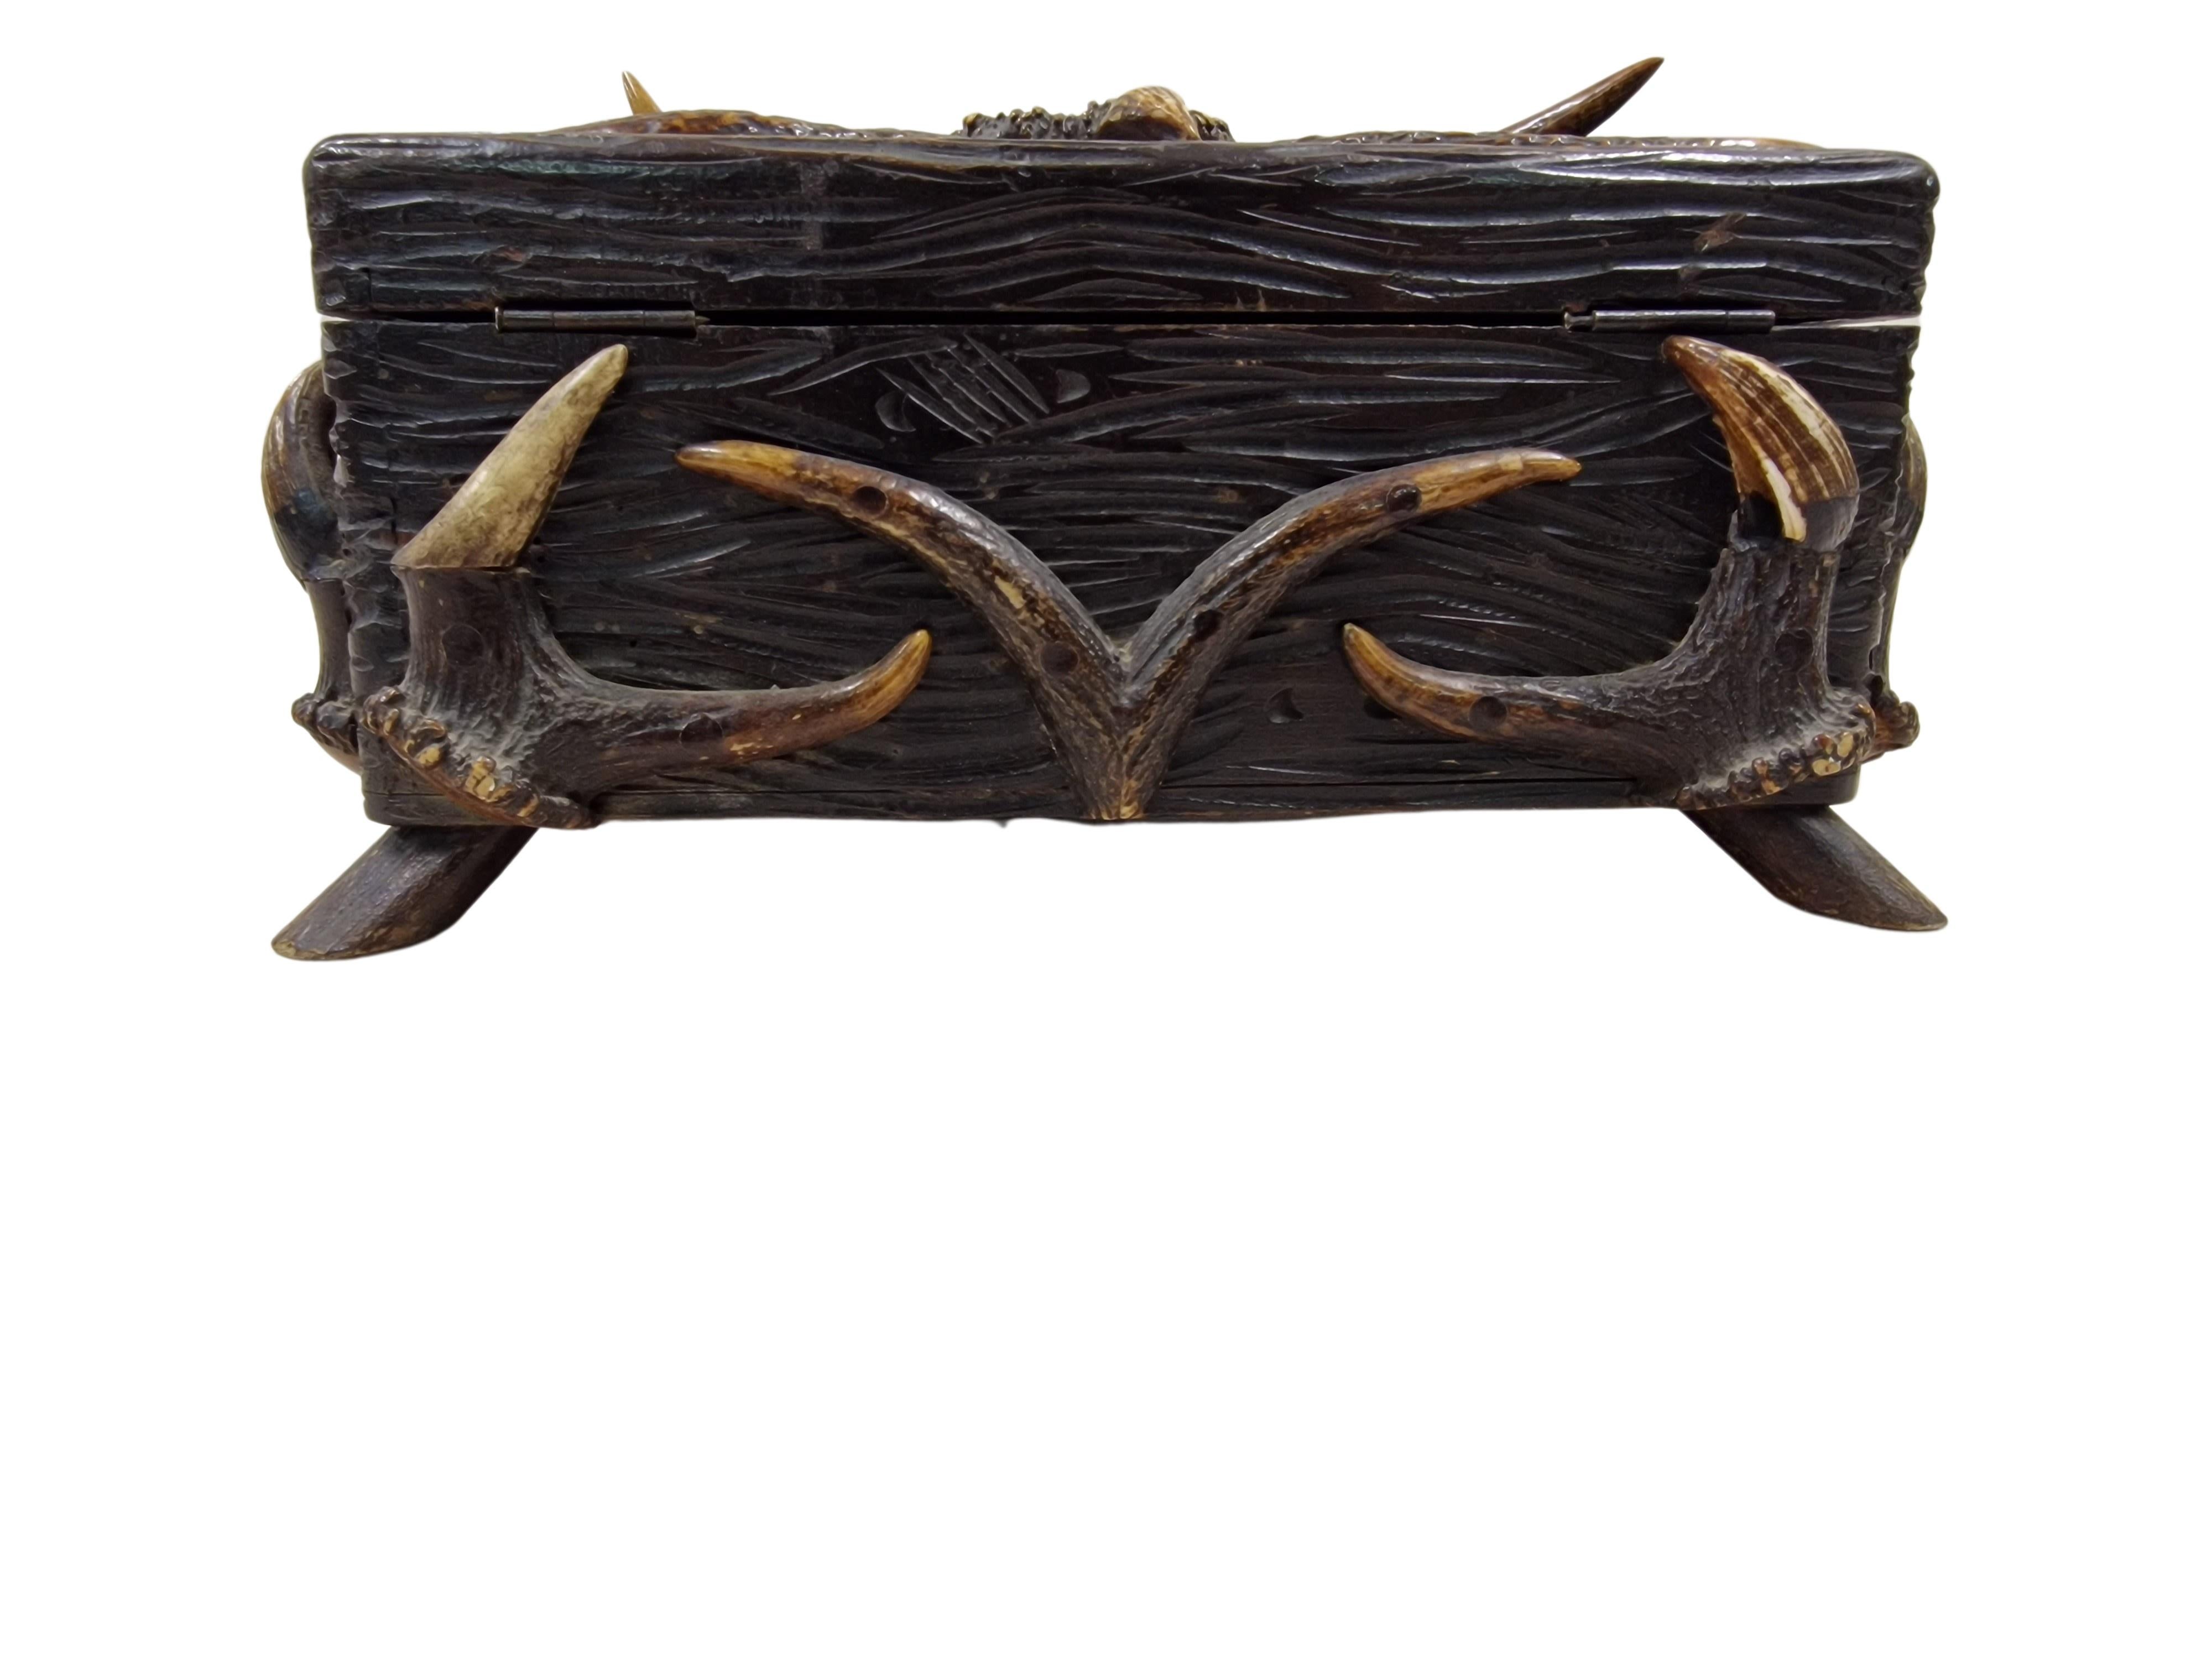 Folk Art Wooden Box, casket, Carved Antler, Tramp Art, 1880, Austria/Black Forest Germany